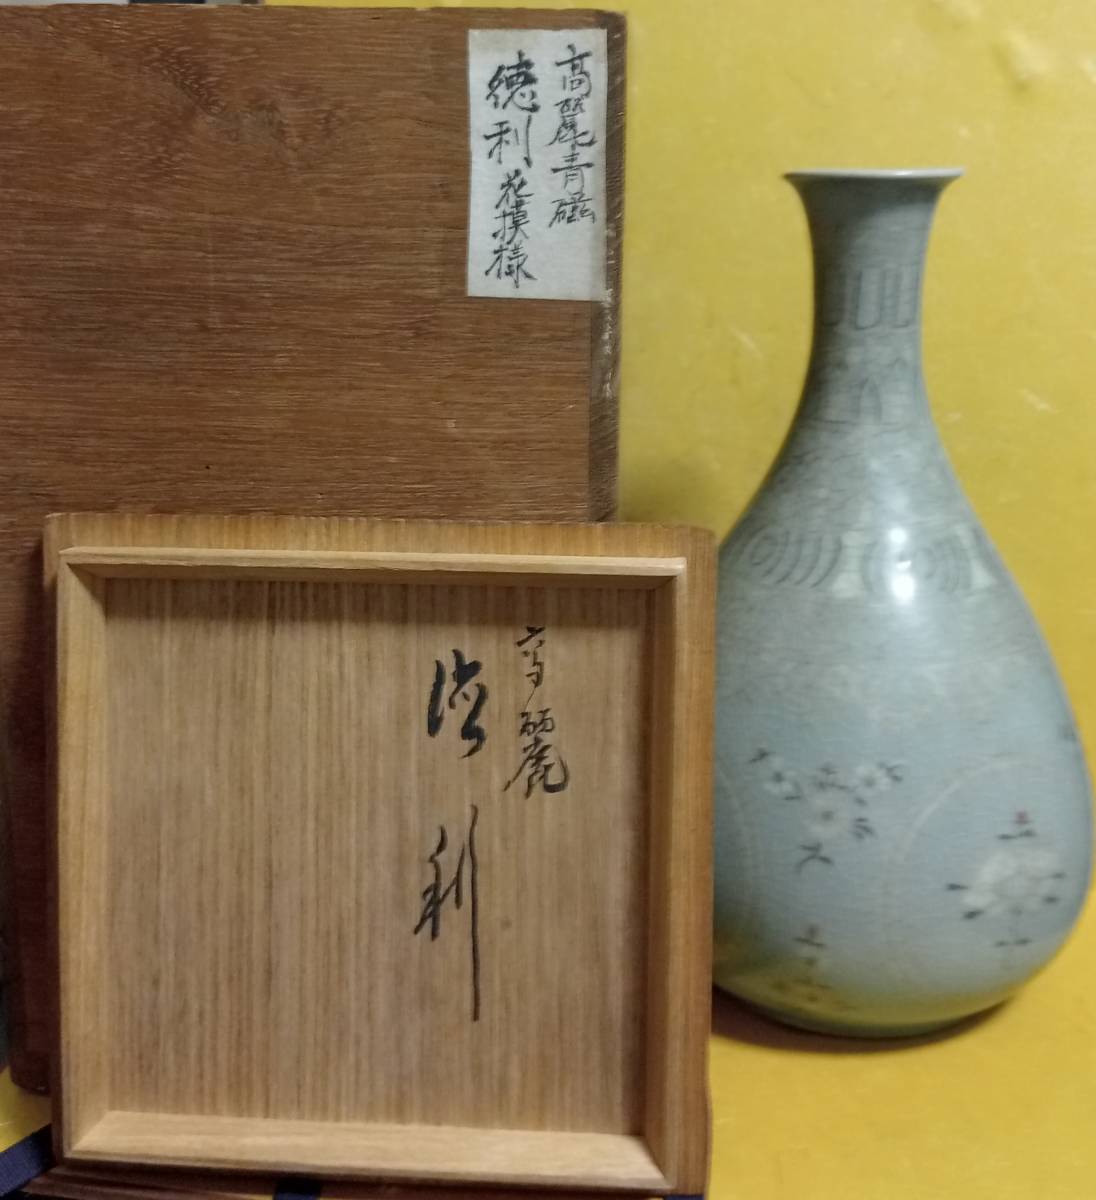 朝鮮古美術 高麗 青磁 白黒象嵌 花紋 徳利 花瓶 花模様 木箱 青釉 朝鮮古陶 李朝